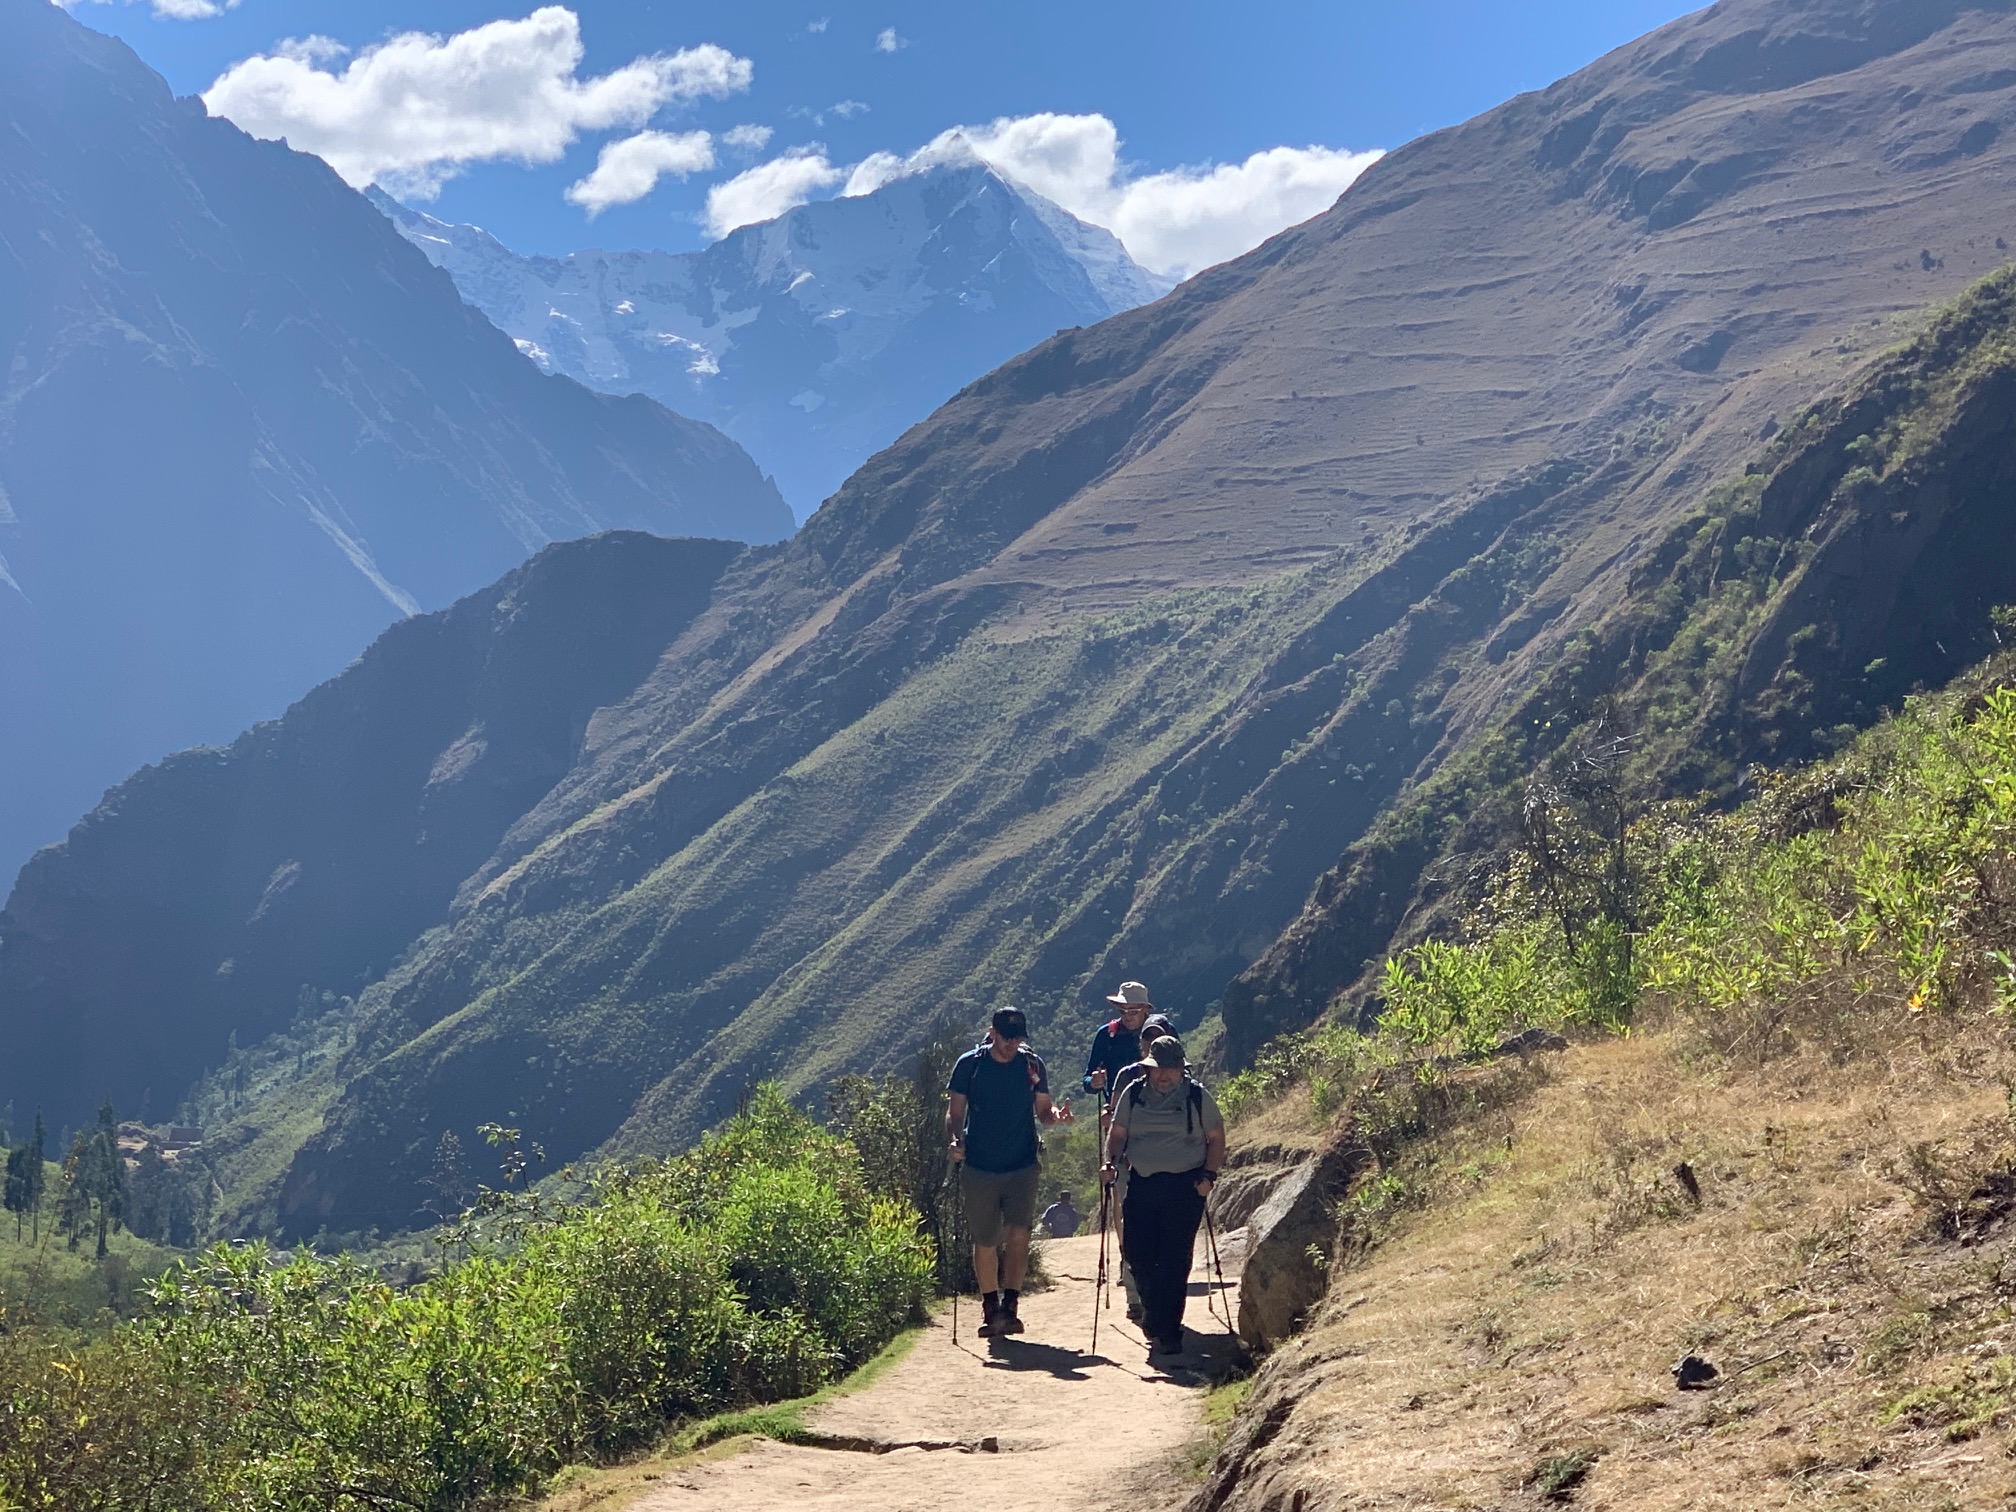 Ian Taylor Trekking trips to Machu Picchu